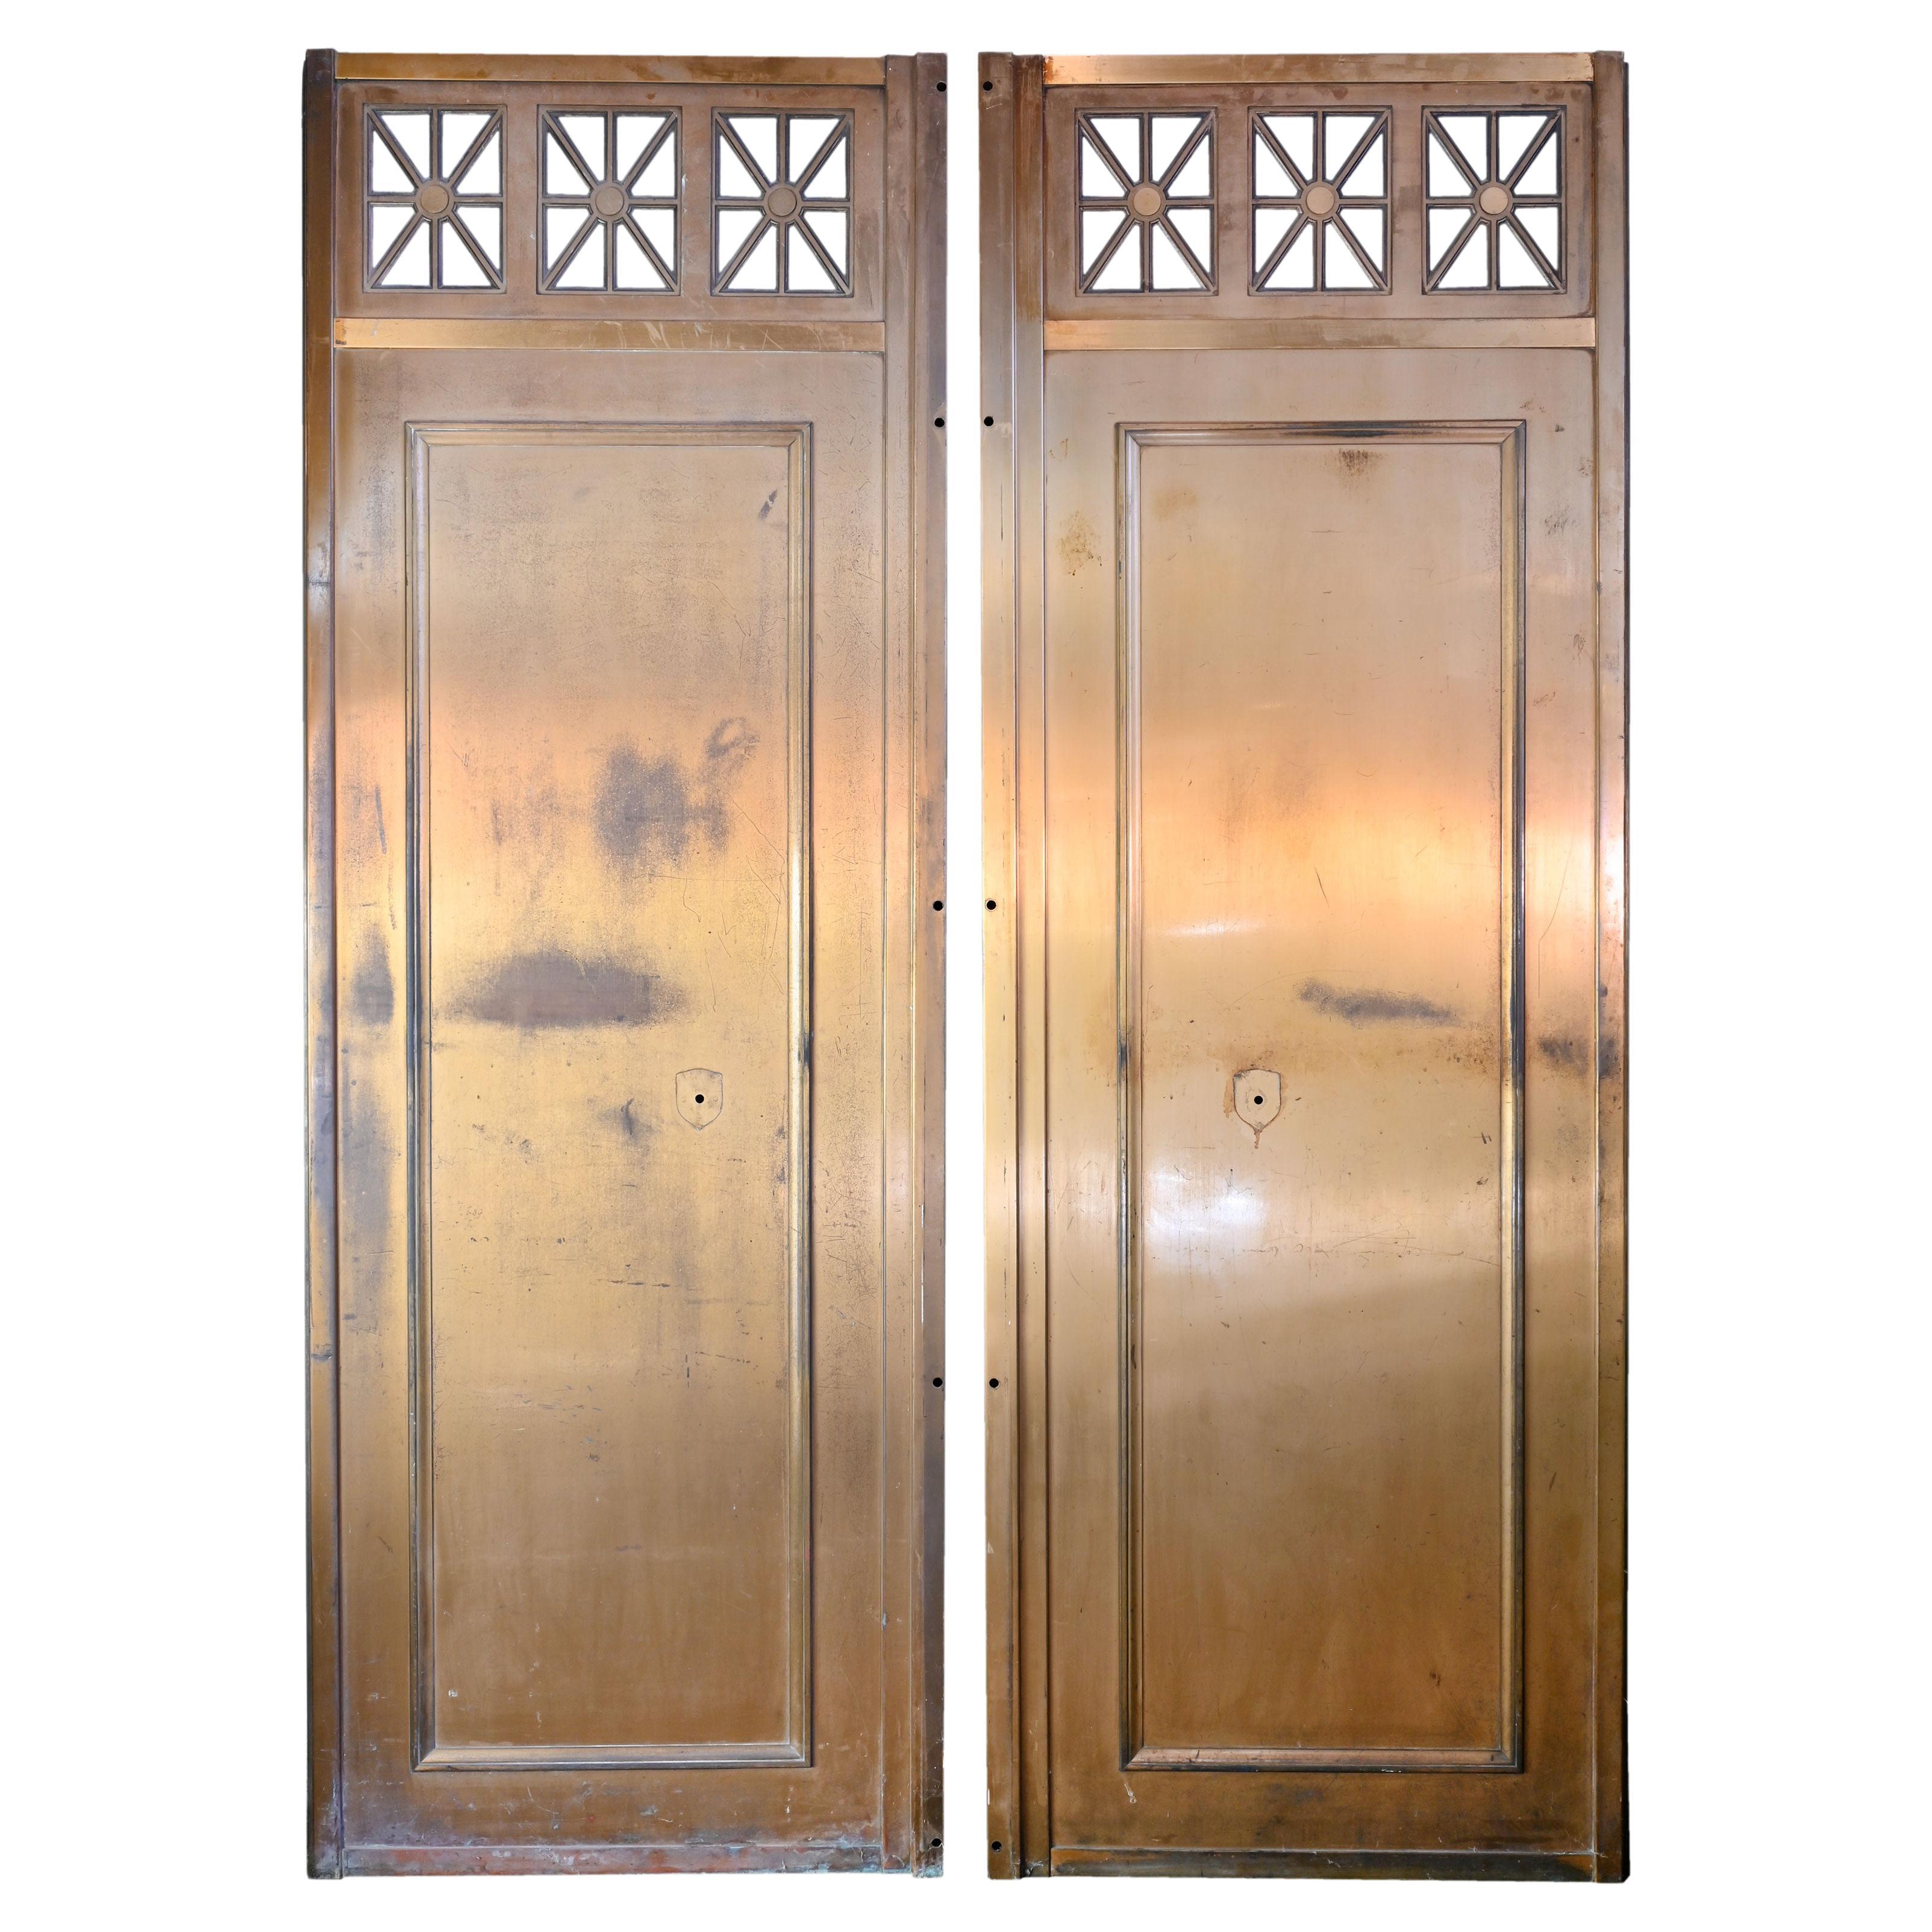 Art Deco Brass Elevator Door Panels